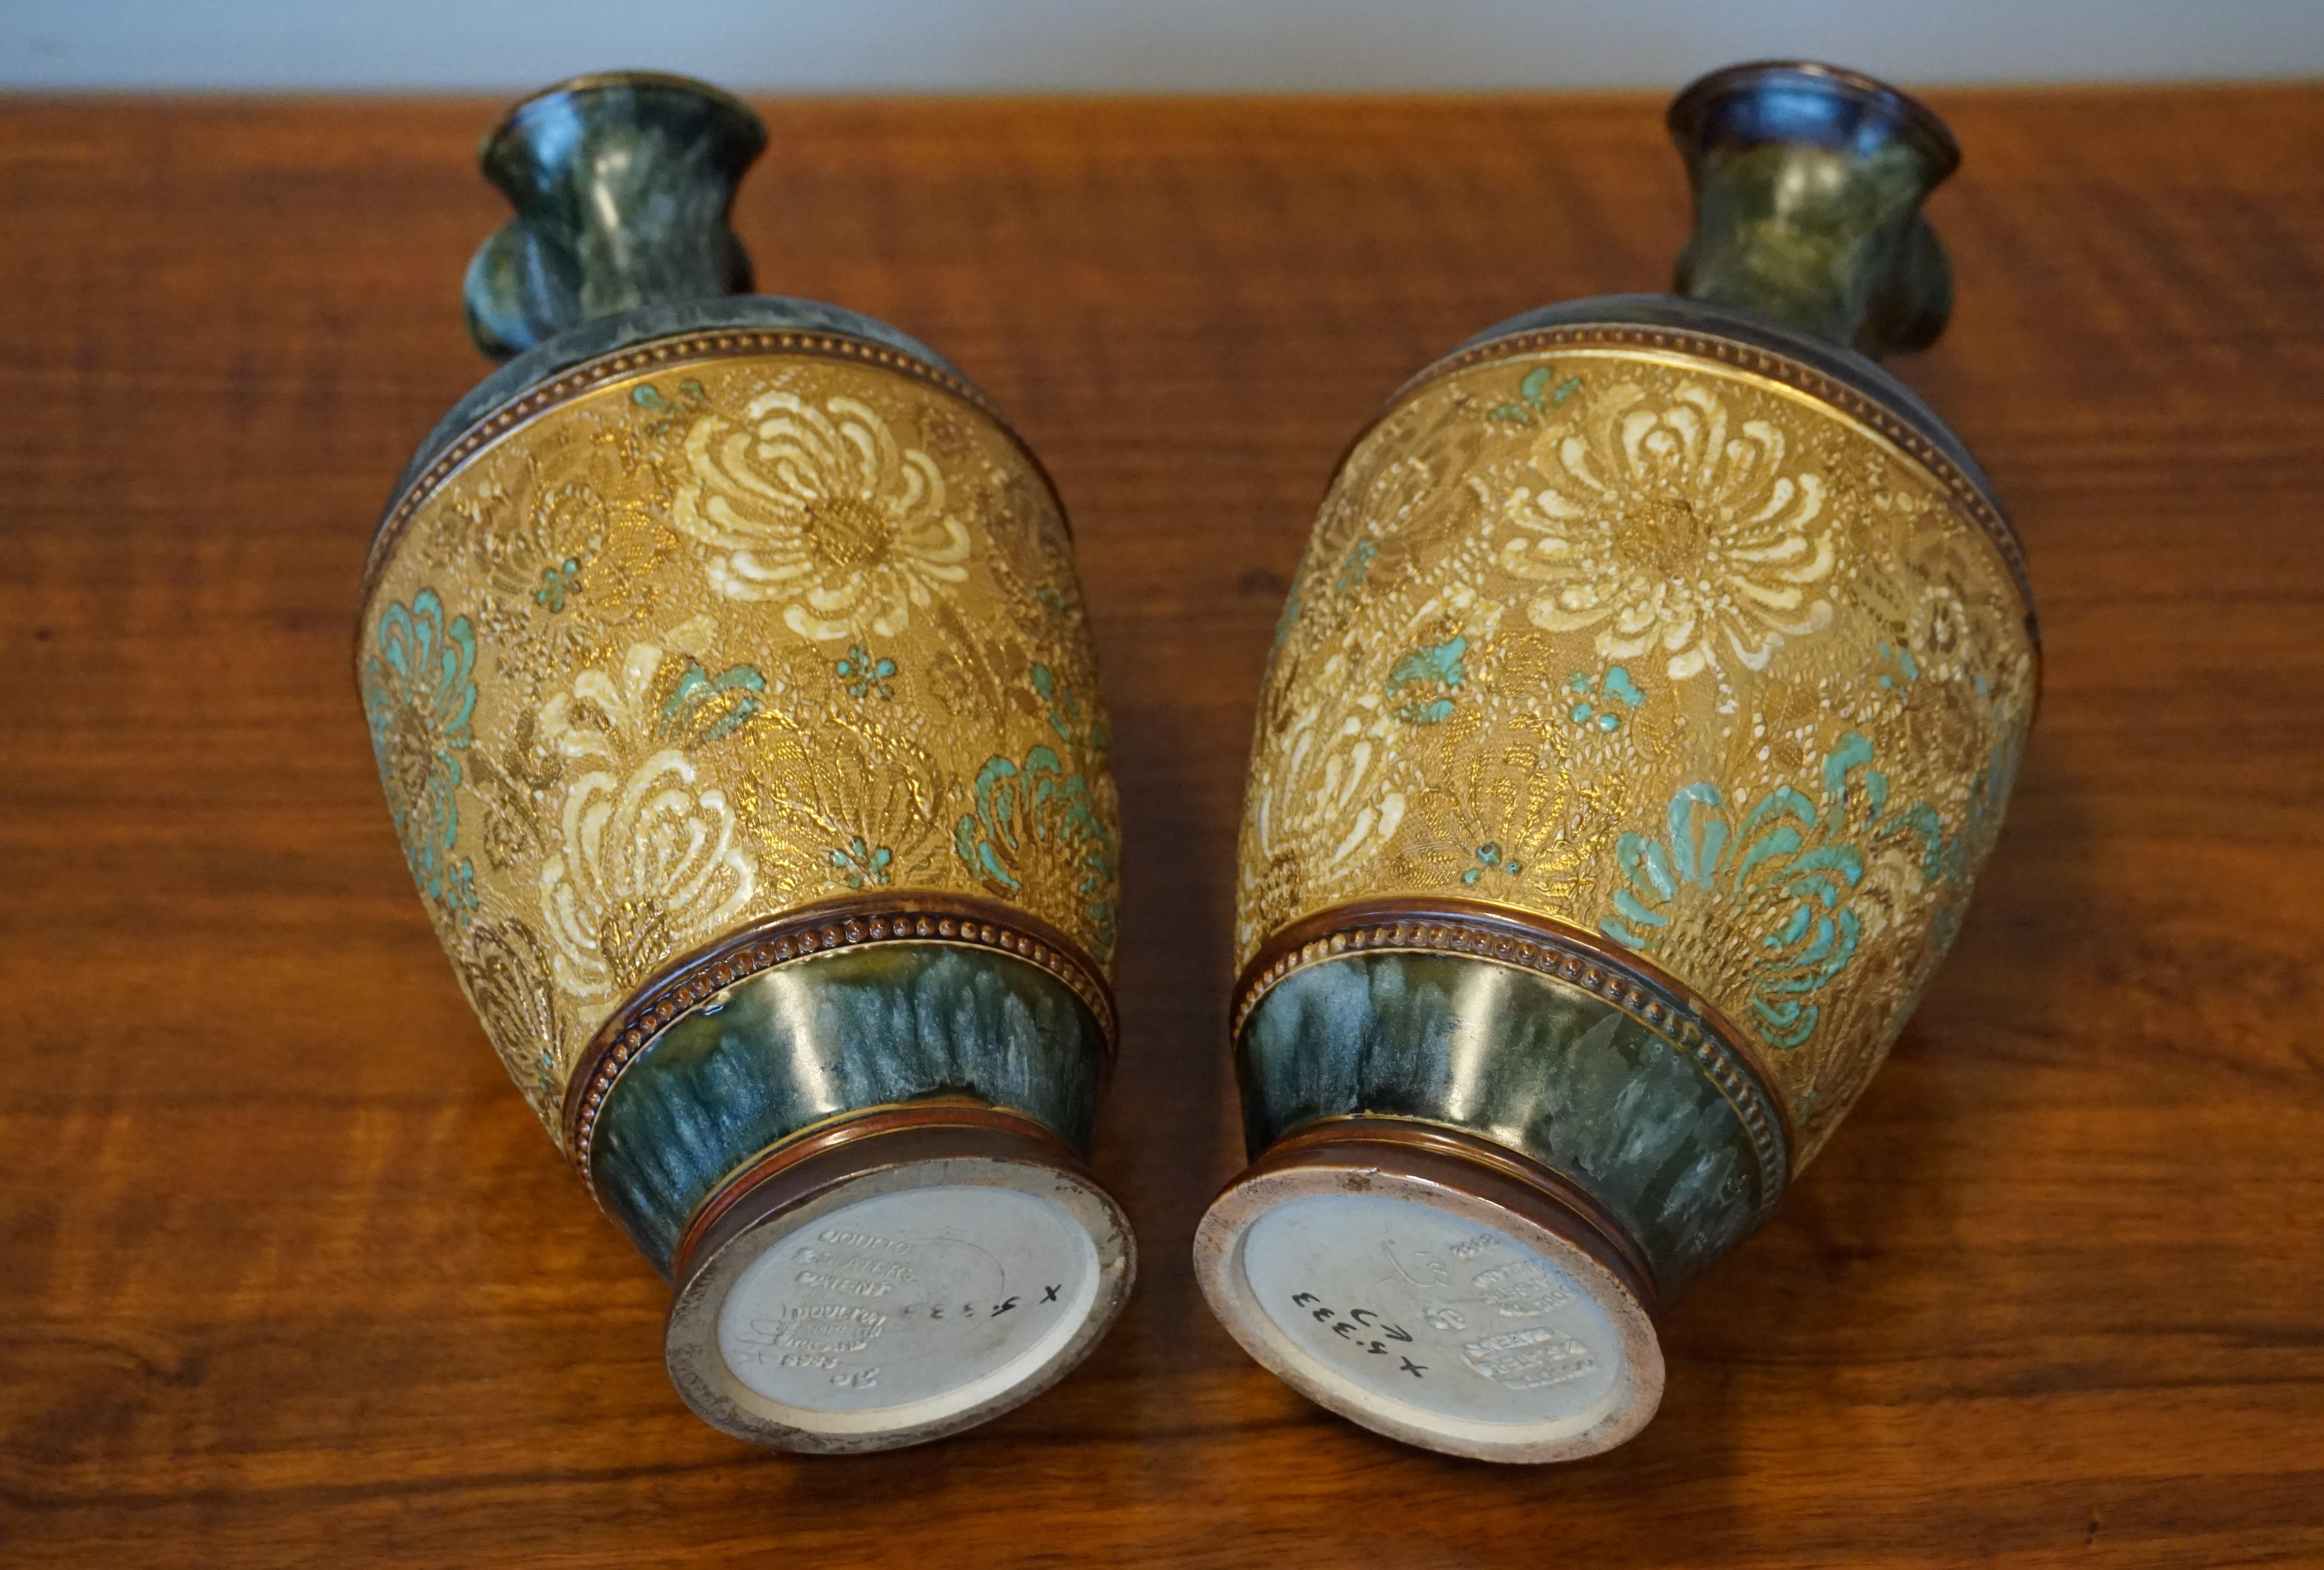 Rare Pair of Doulton Lambeth Vases with Striking Golden & Enameled Flower Decor For Sale 1